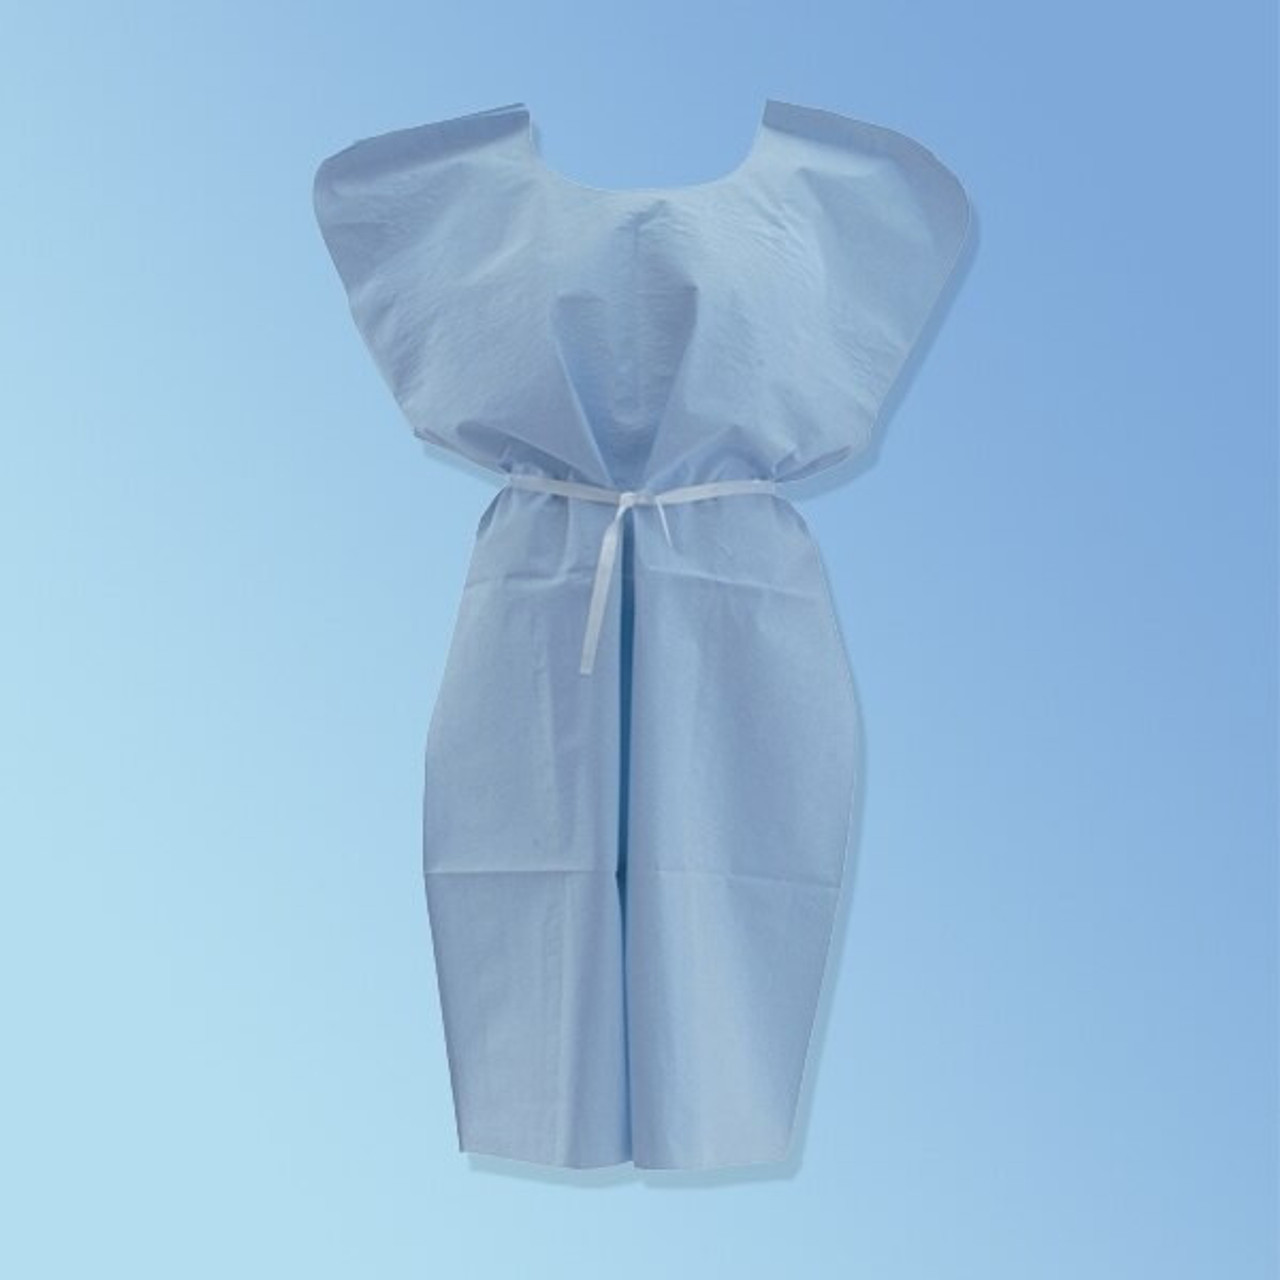 Medline Patient medical gowns 3/4 sleeve Lot Of 4, shoulder snaps tie back  blend | eBay